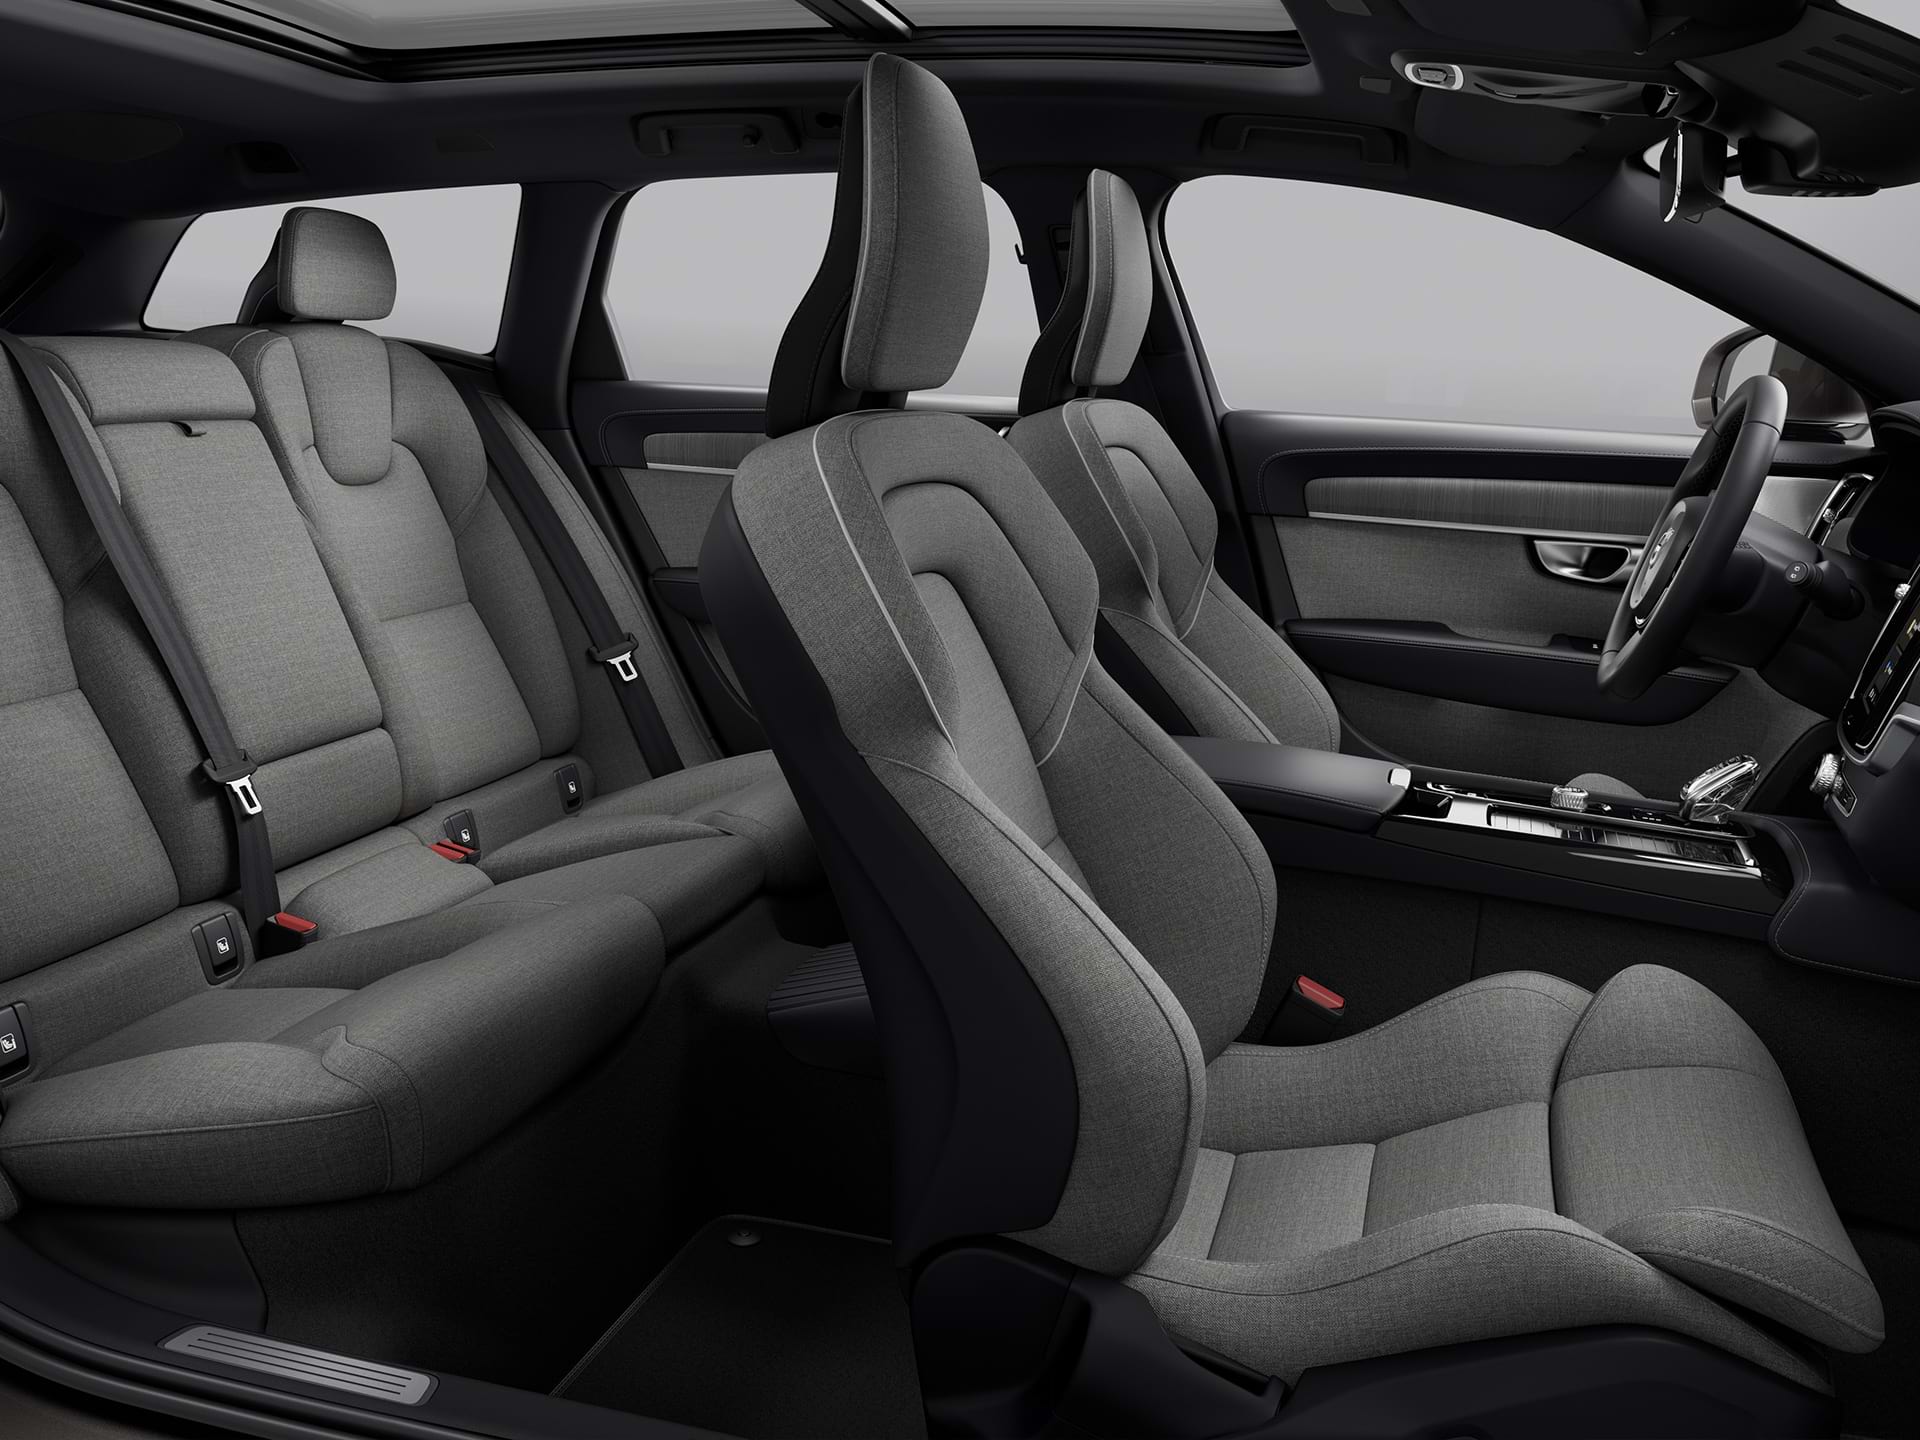 Vue panoramique des quatre sièges recouverts de tissu de l'habitacle d'un spacieux break Volvo.